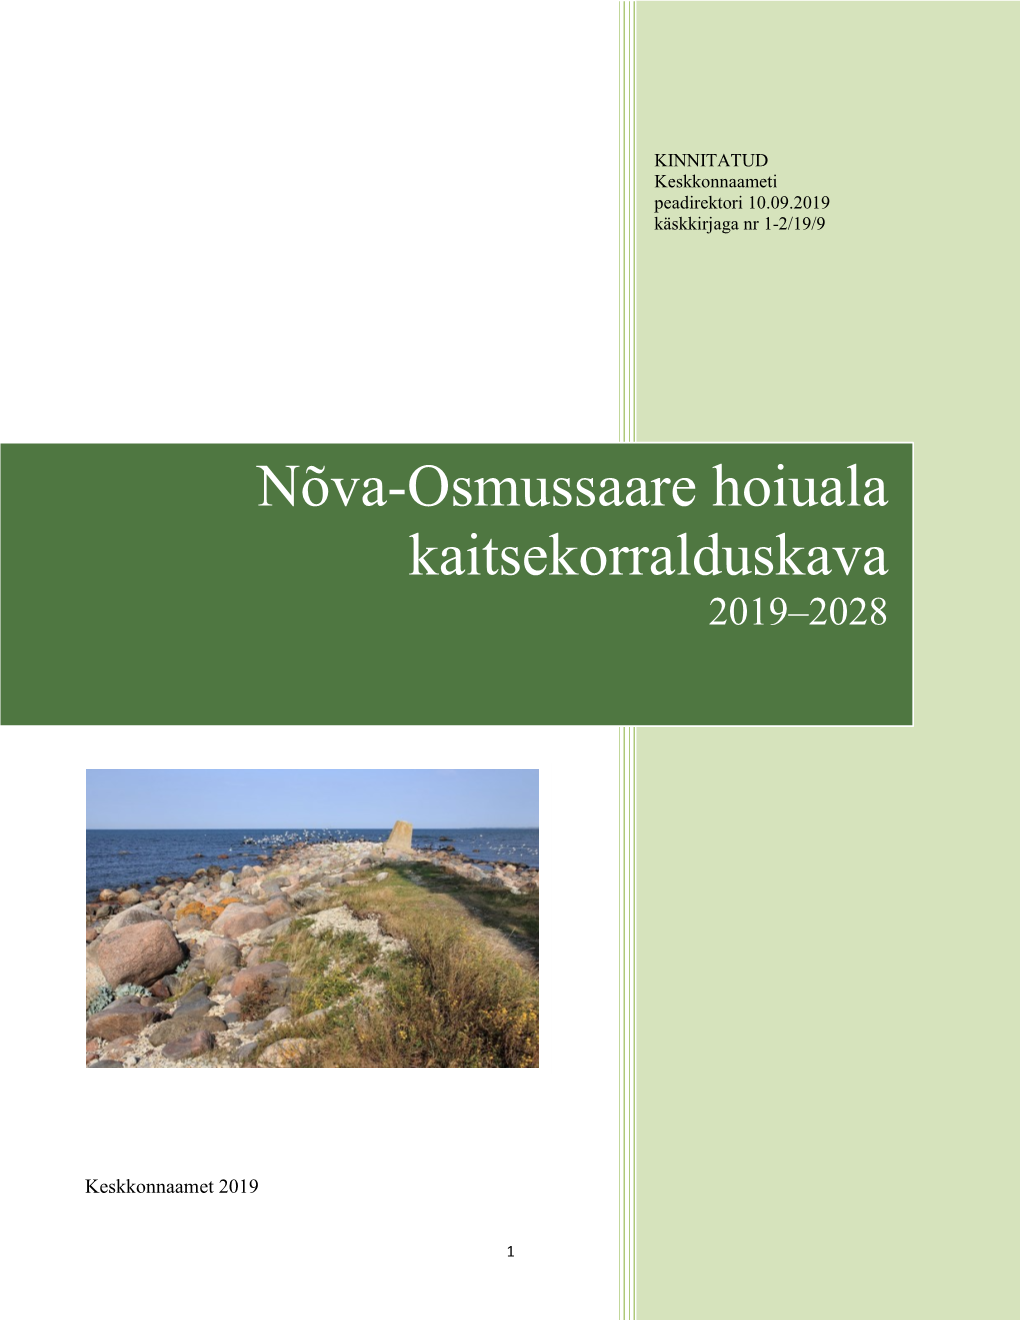 Nõva-Osmussaare Hoiuala Kaitsekorralduskava 2019-2028